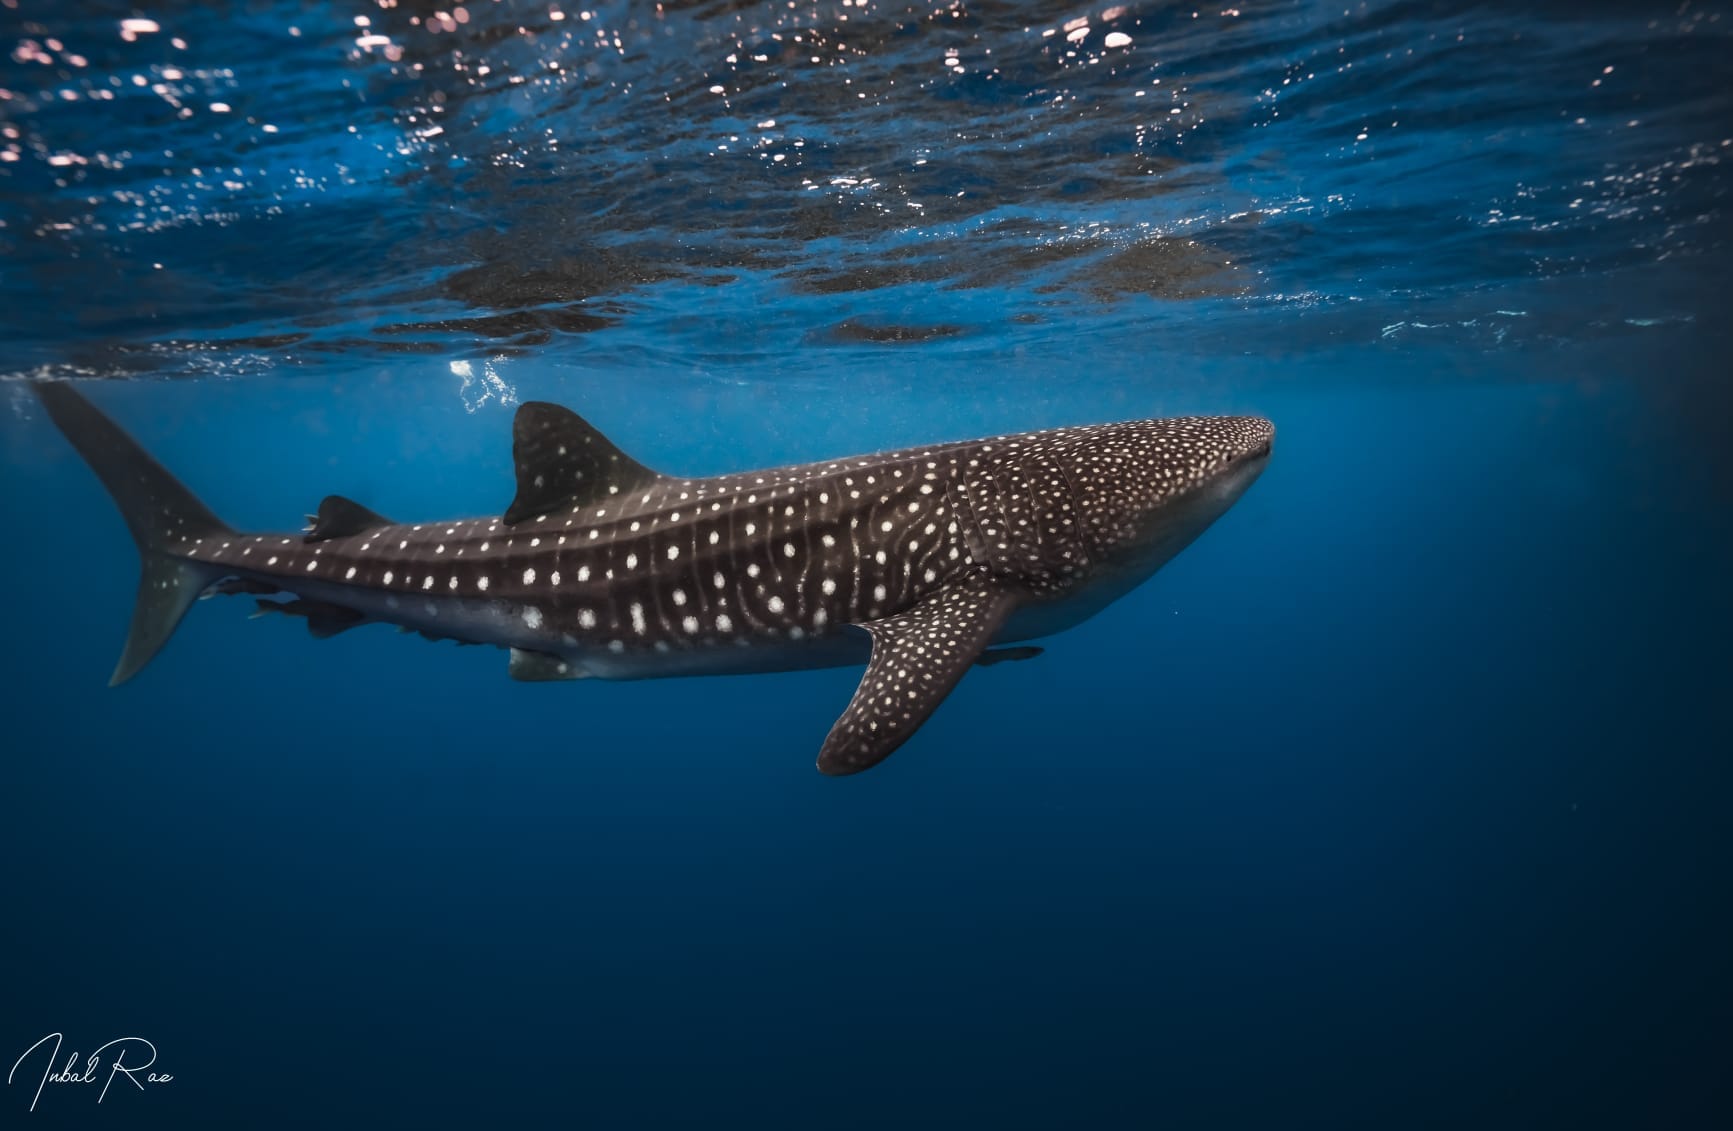 צילום: ענבל רז כריש לוויתן - הוא היה ענק, כעשרה מטרים אורכו, ויפה, עם העור האפור כהה והנקודות הלבנות המסודרות שלו, והוא שחה לאט